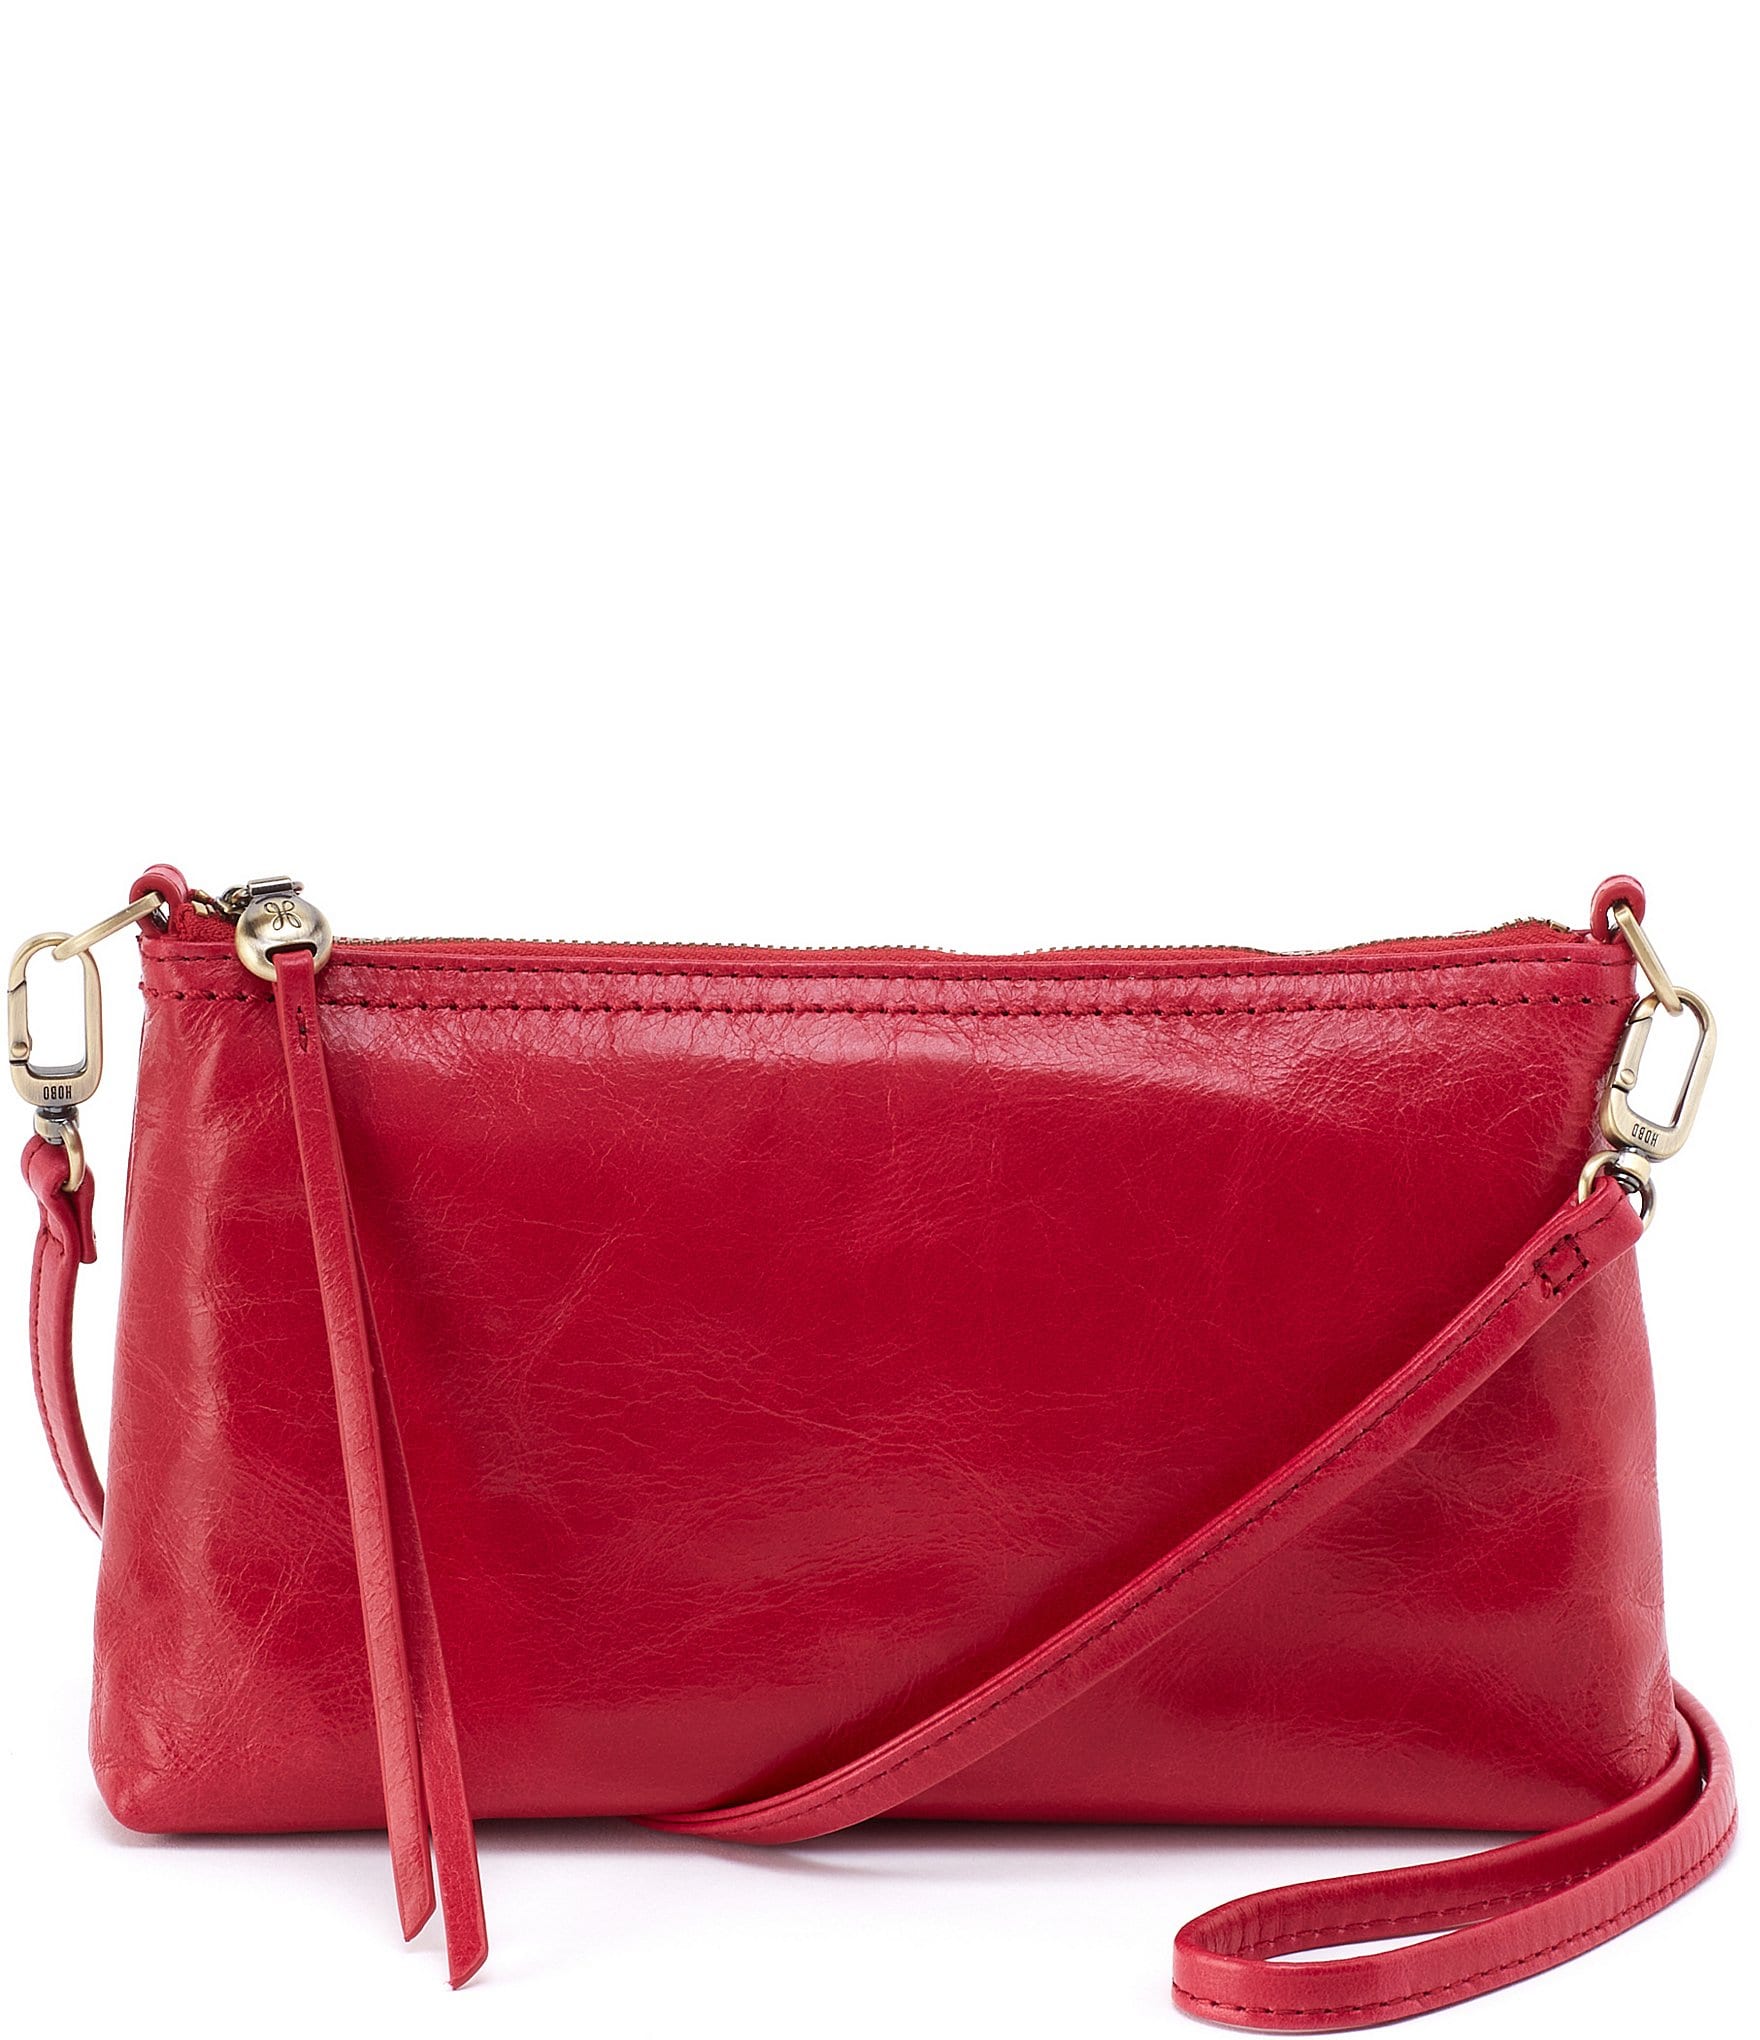 HOBO Red Handbags, Purses & Wallets